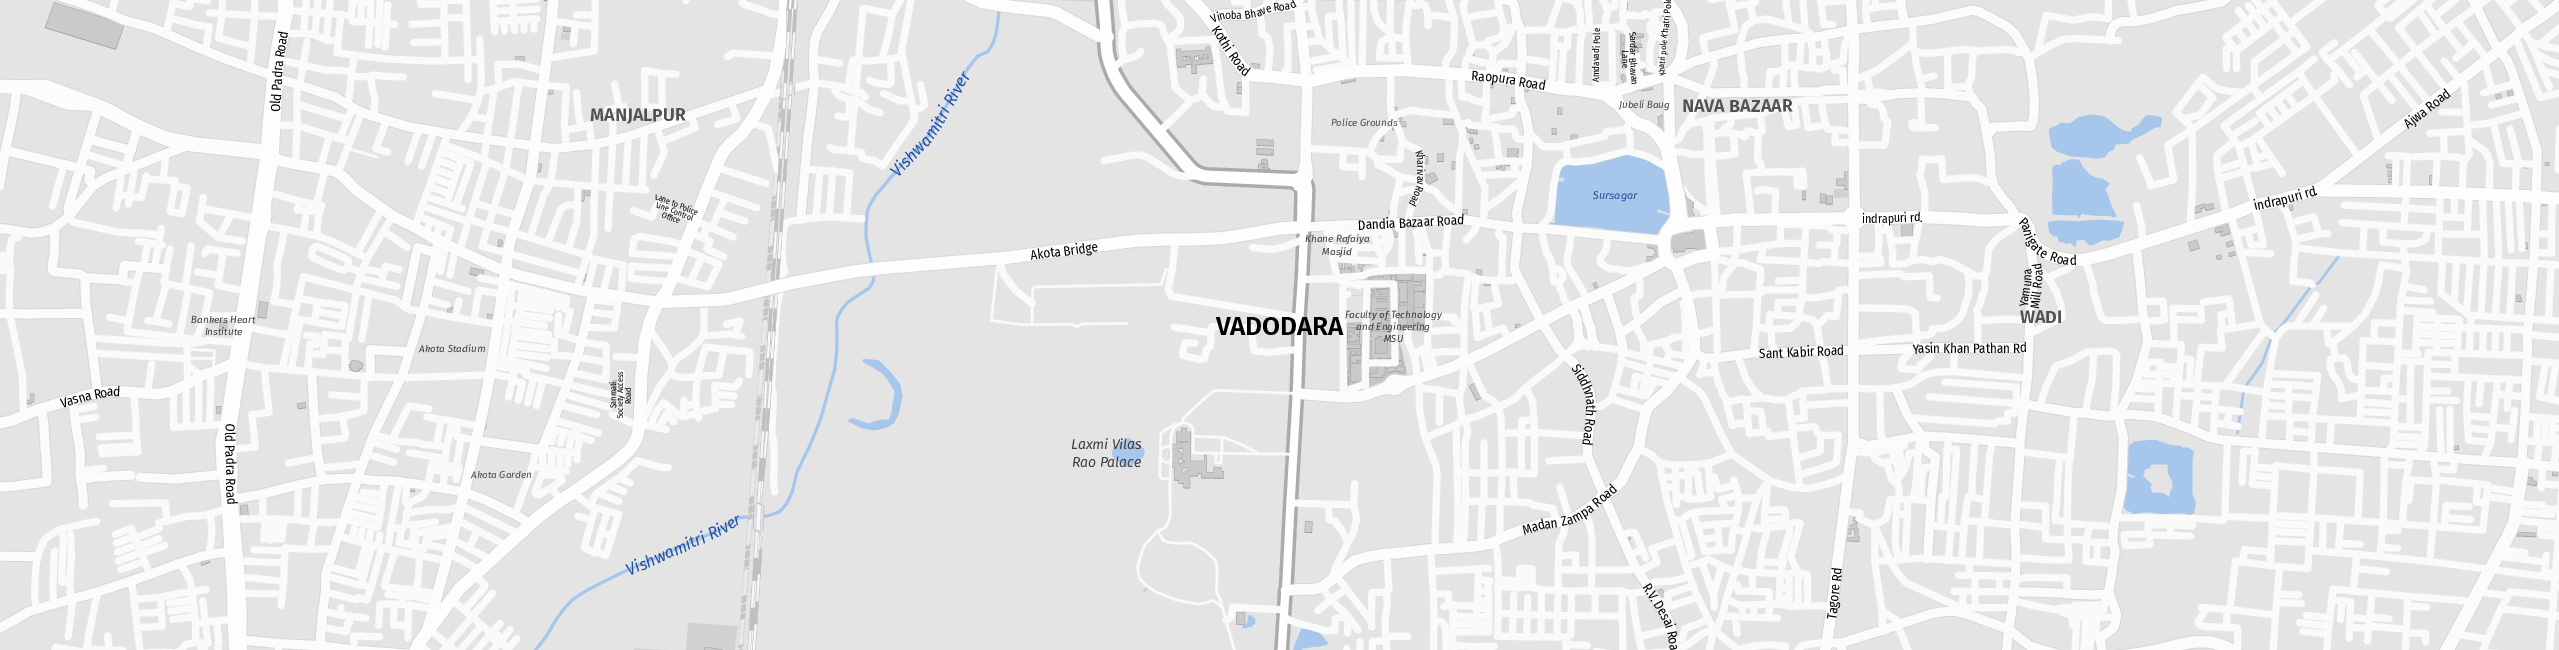 Stadtplan Vadodara zum Downloaden.